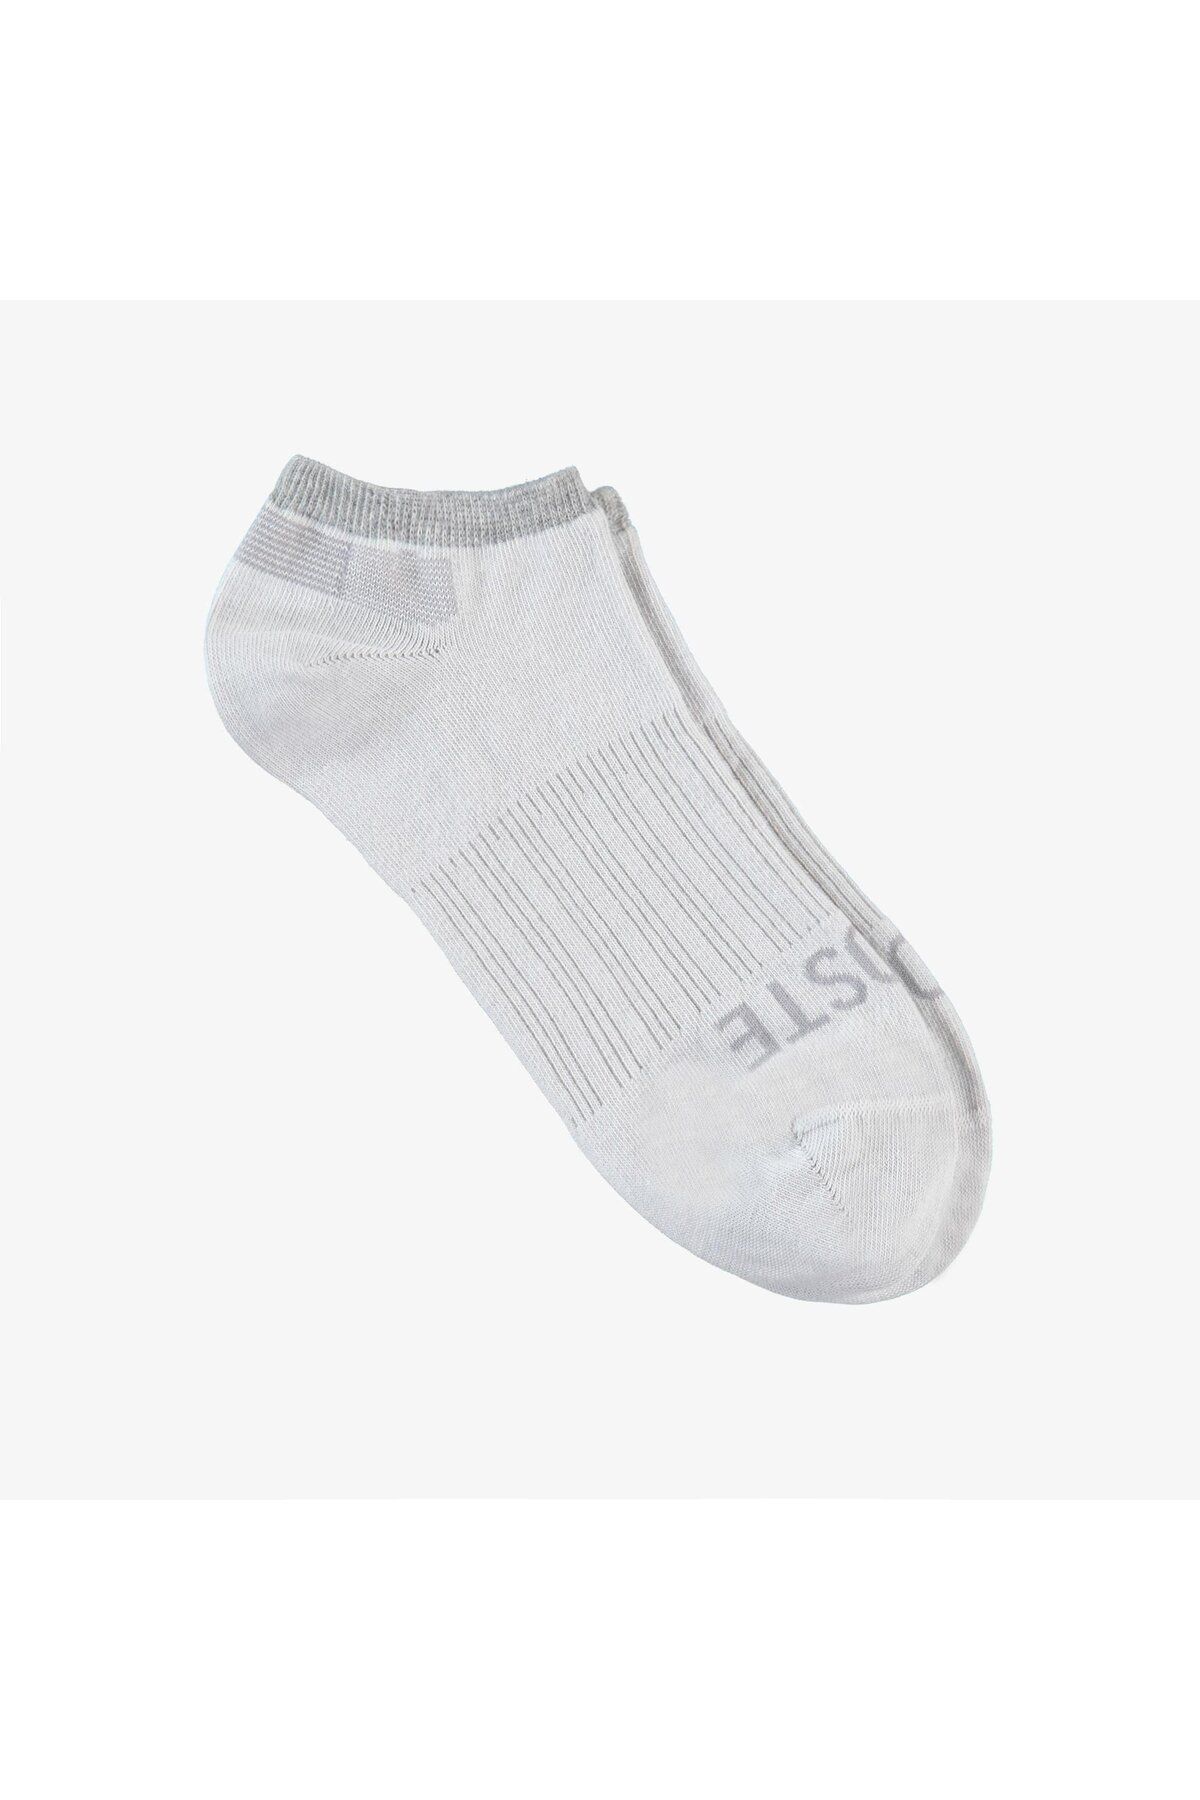 Lacoste Erkek Baskılı Beyaz Çorap RA0116-16B